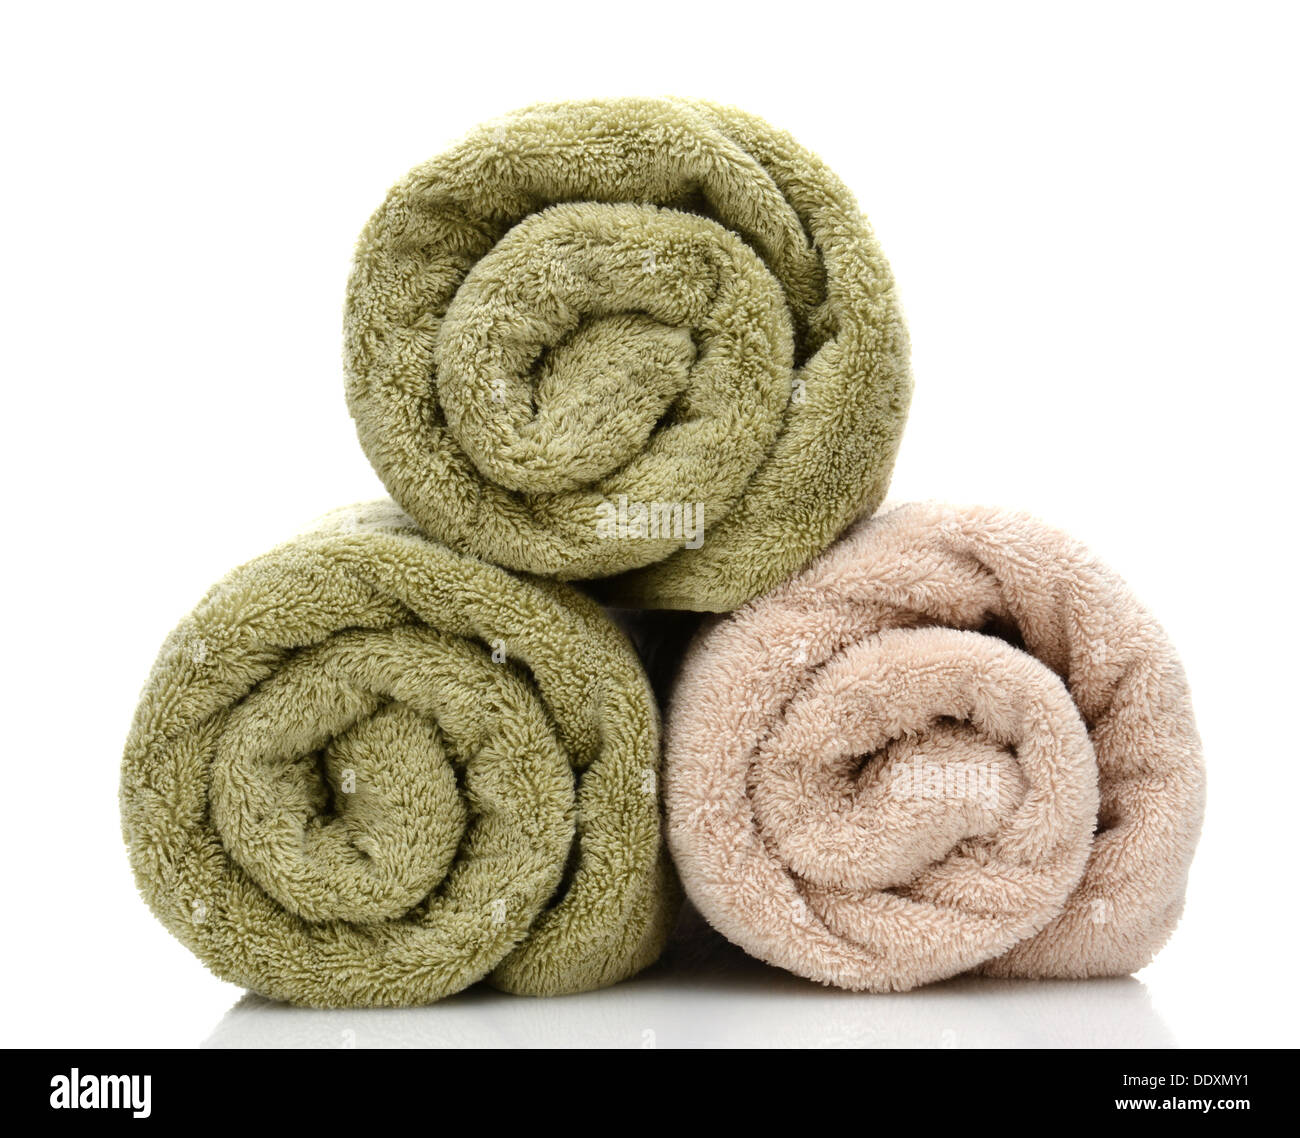 Drei gerollte Handtücher frisch gewaschen auf einem weißen Hintergrund mit Reflexion. Closeup, Blick auf das Handtuch endet. Stockfoto